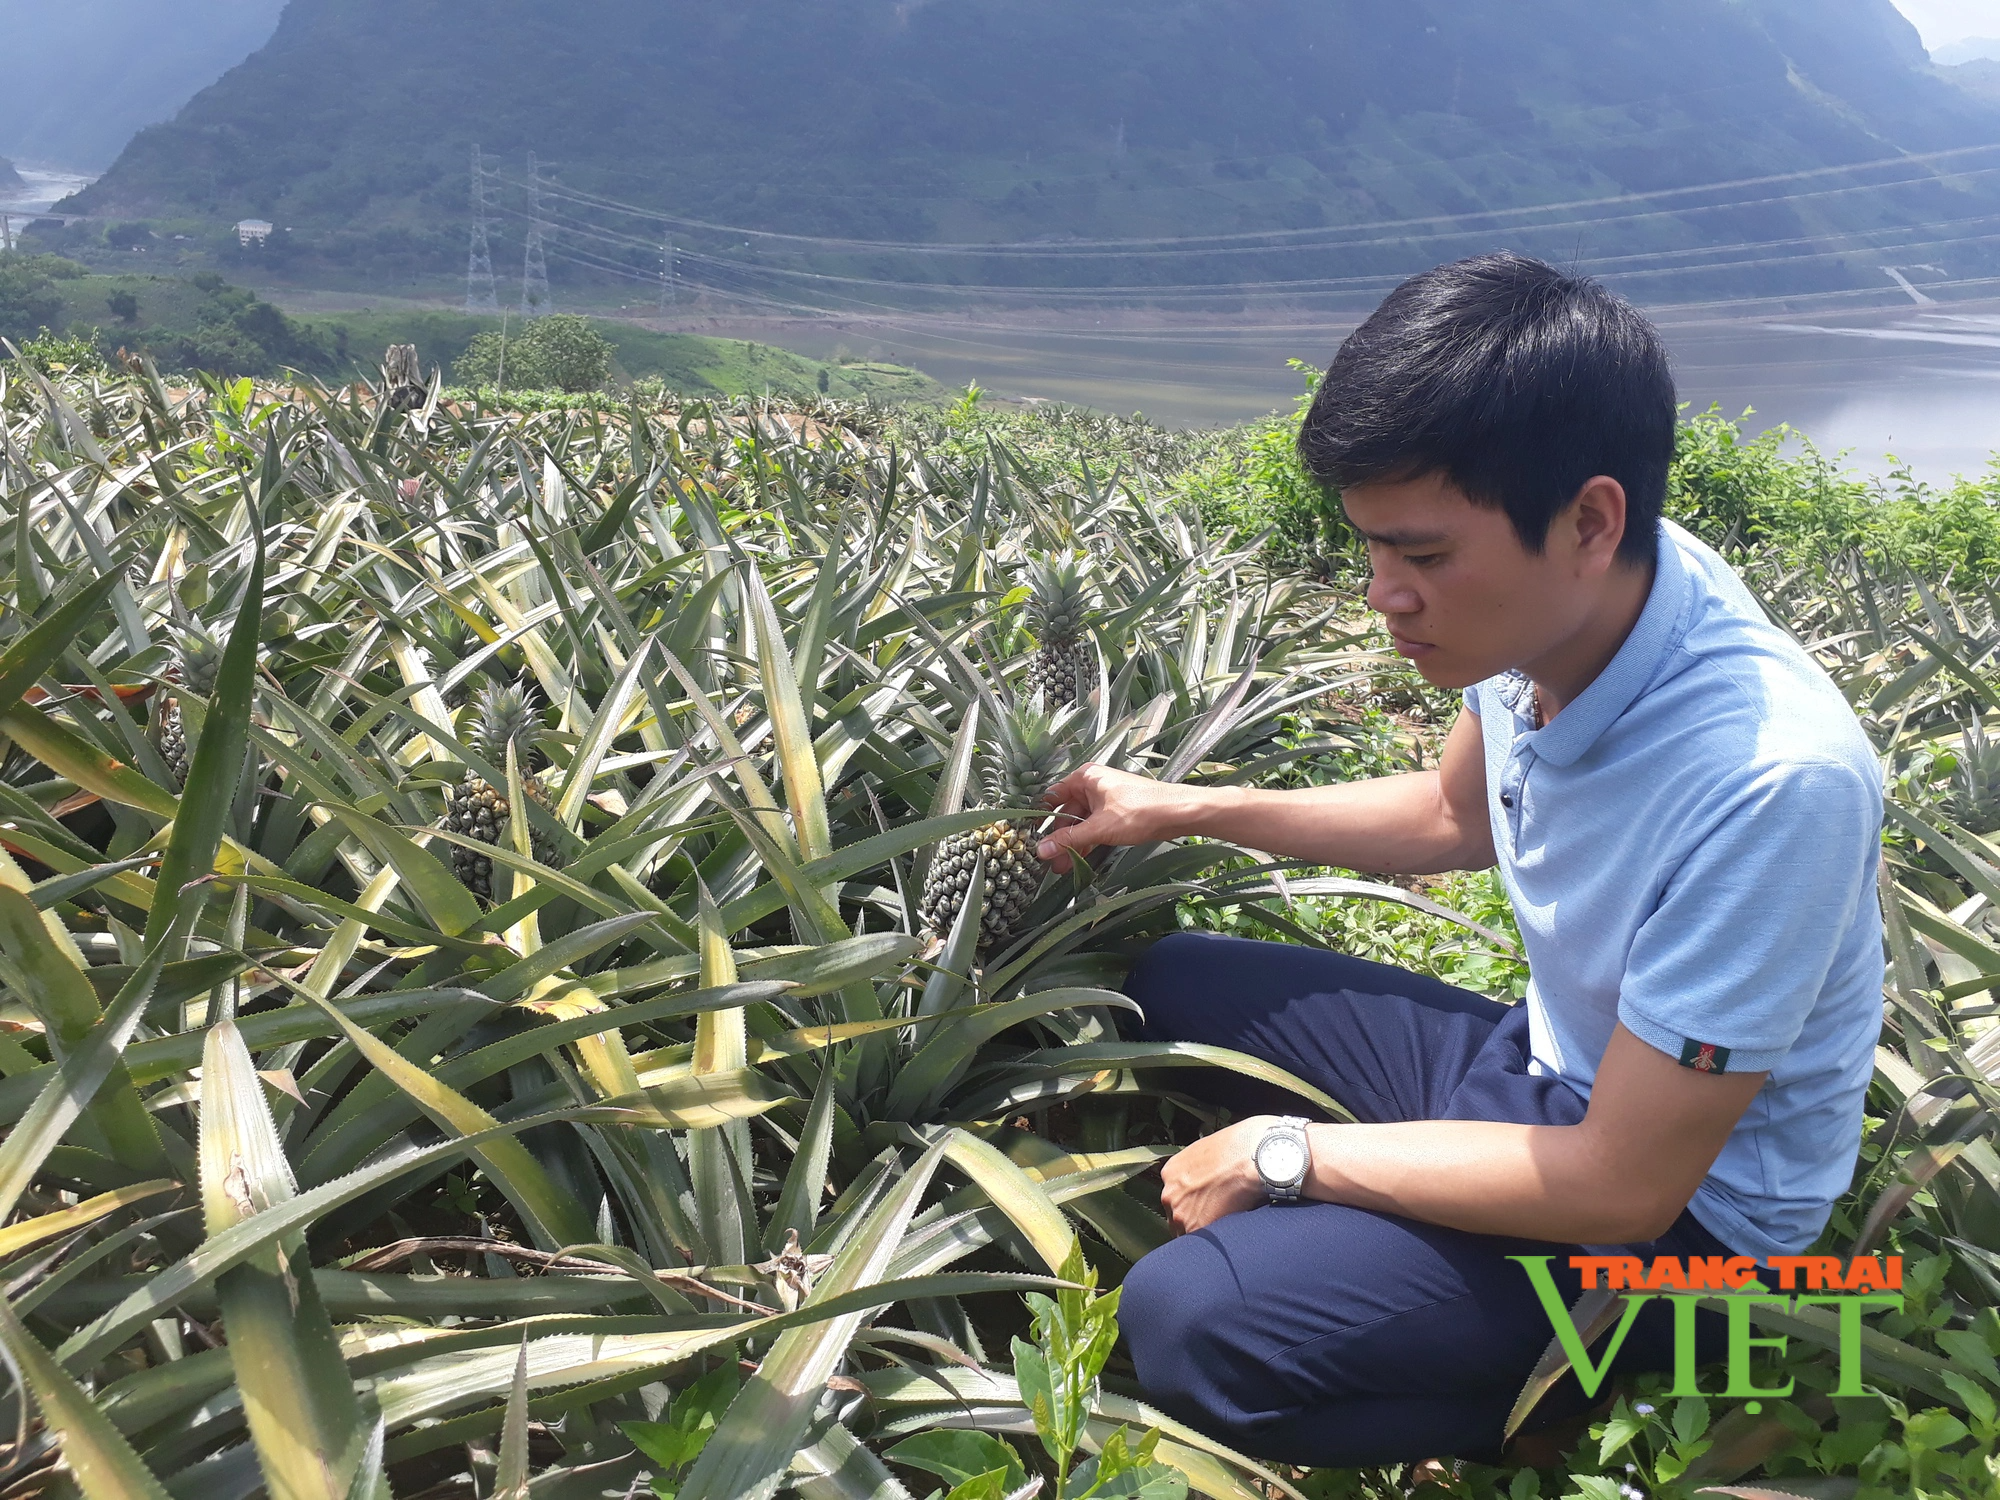 Lai Châu: Hỗ trợ nông dân chuyển đổi cơ cấu cây trồng vật nuôi, xây dựng nông thôn mới - Ảnh 3.